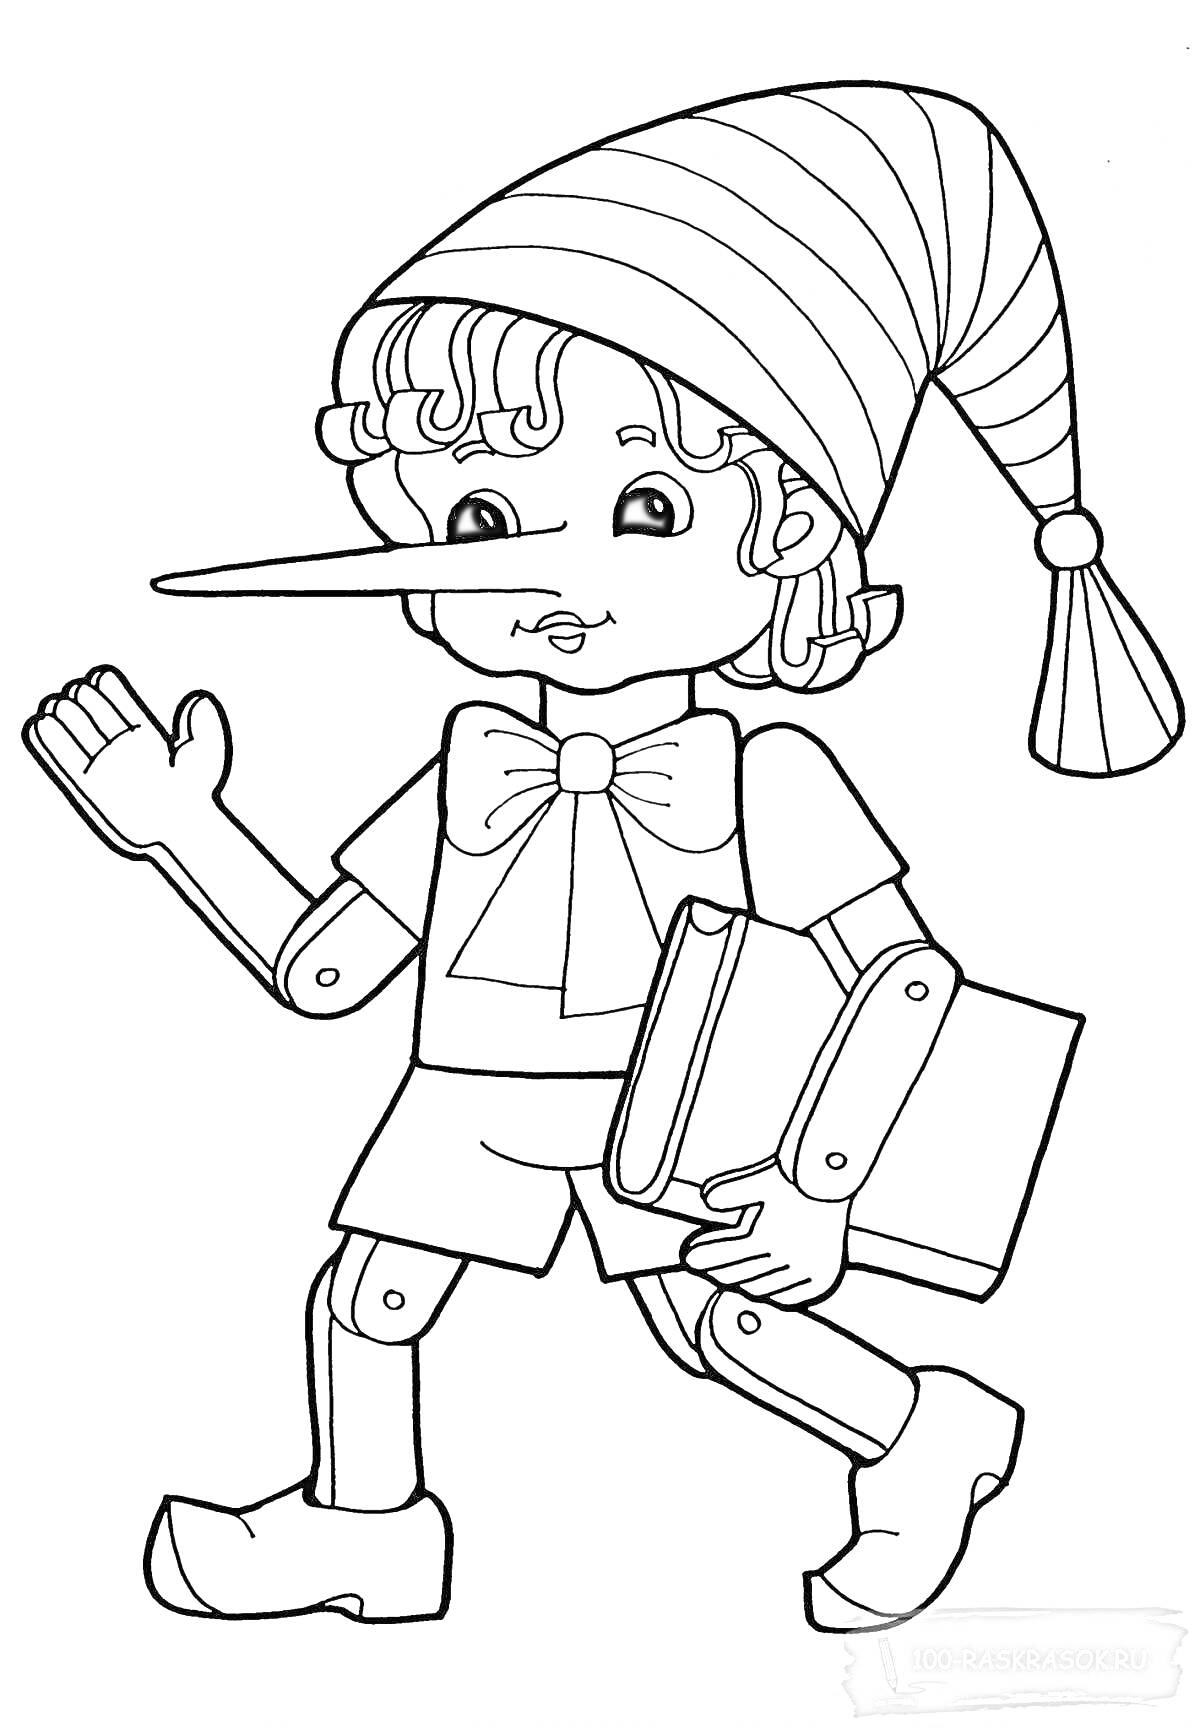 Раскраска Буратино с книгой в руках, в шляпе с кисточкой, с длинным носом, в коротких шортах и с бантом на шее